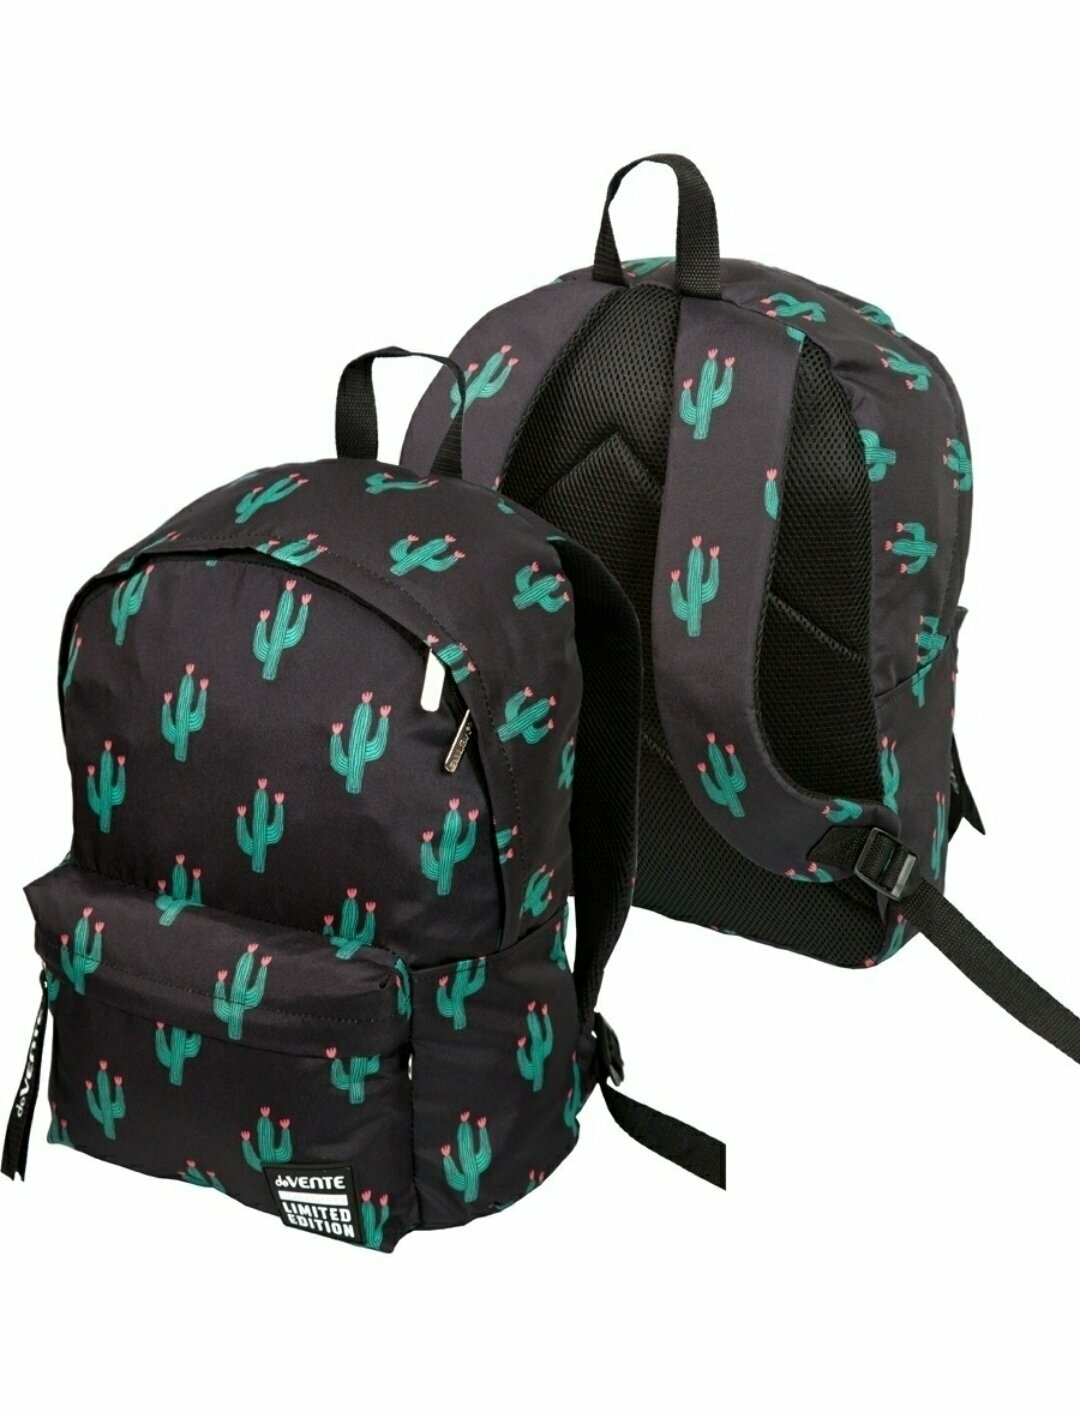 Рюкзак школьный deVente "Limited Edition. Cactus" 40*30*14 см, 1 отделение, эргономичная спинка